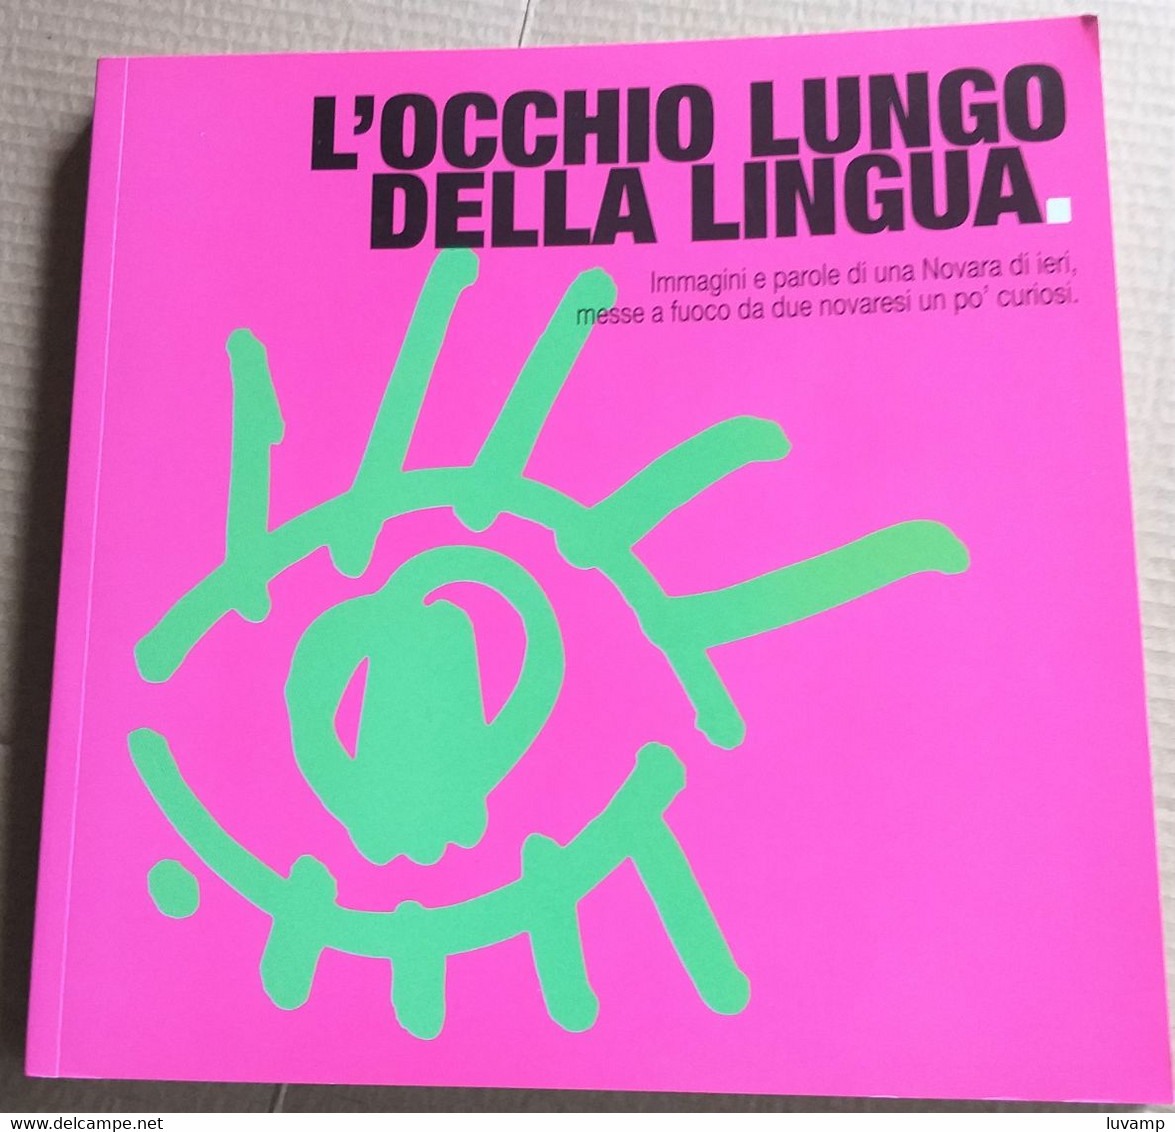 L'OCCHIO LUNGO DELLA LINGUA -IMMAGINI E PAROLE DI NOVARA -EDIZ. 2005 ( CART 70) - Storia